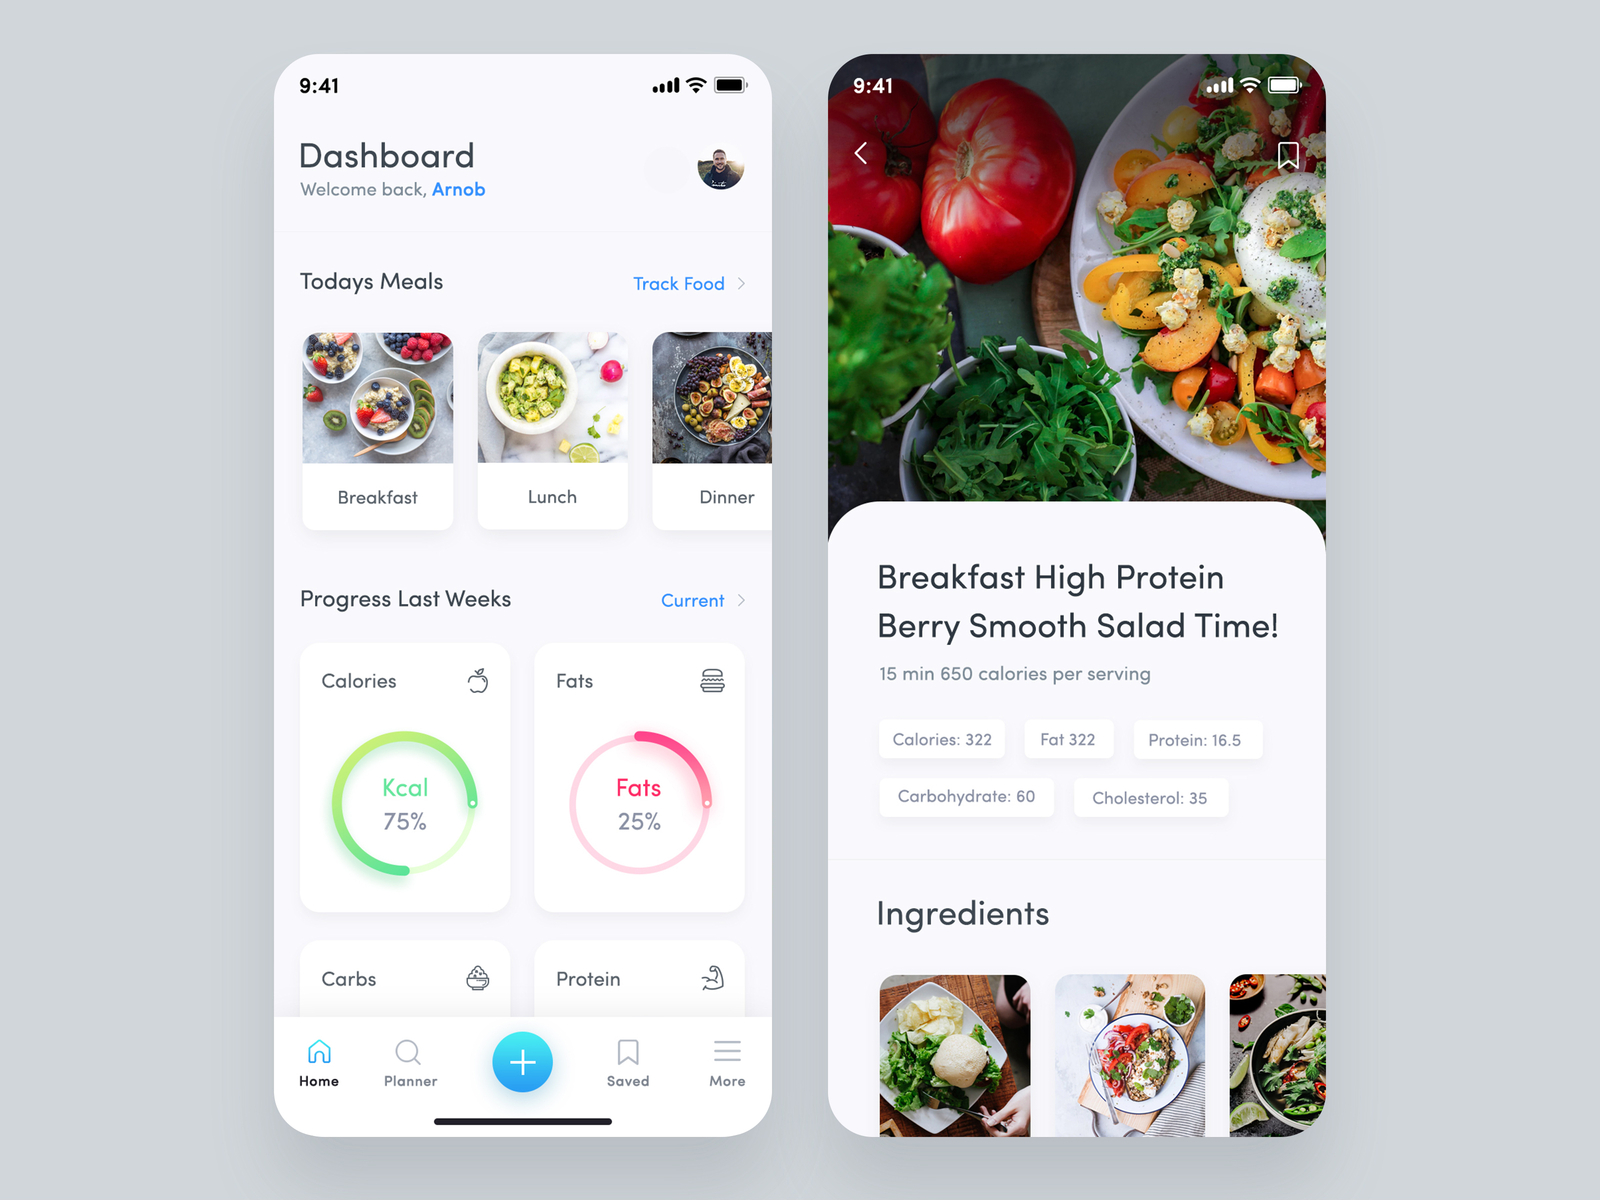 macros meal planner app